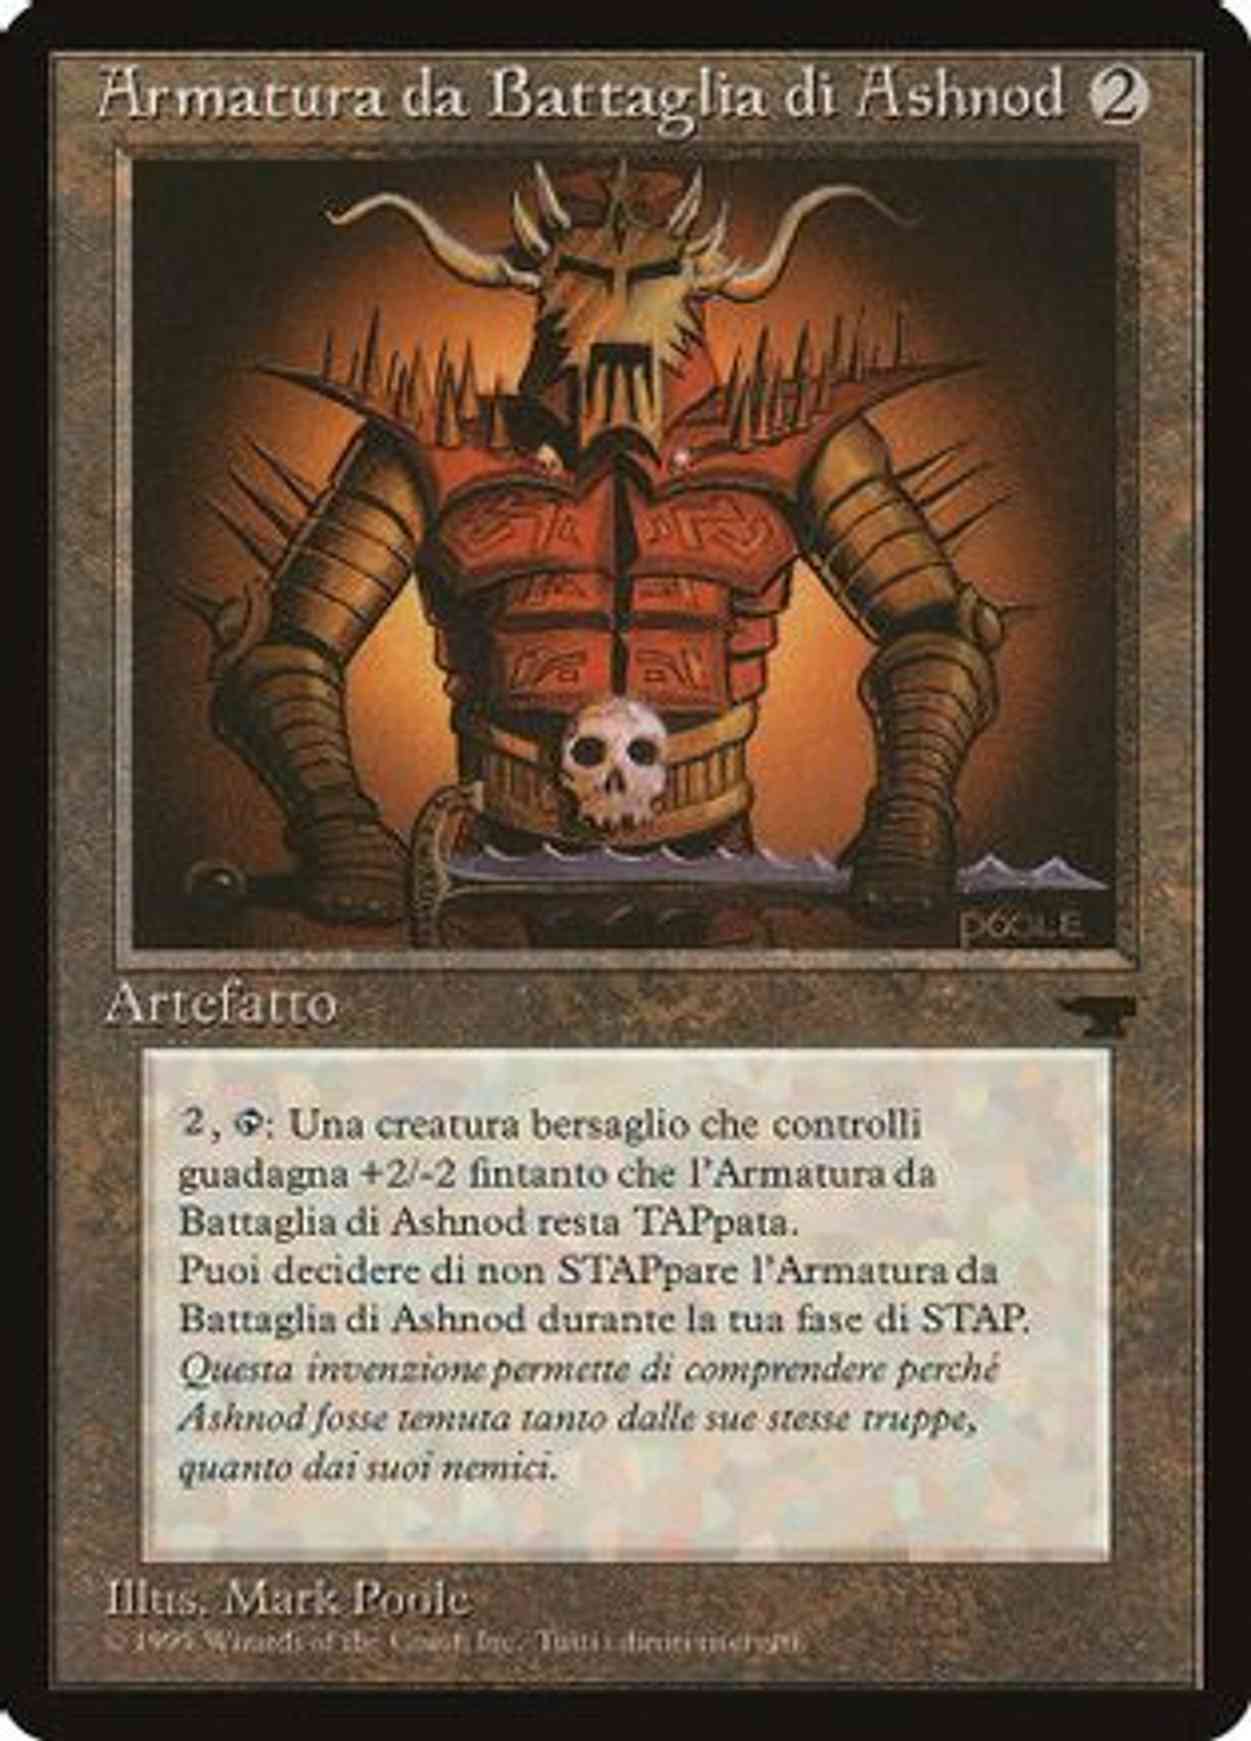 Ashnod's Battle Gear (Italian) - "Armatura da Battaglia di Ashnod" magic card front